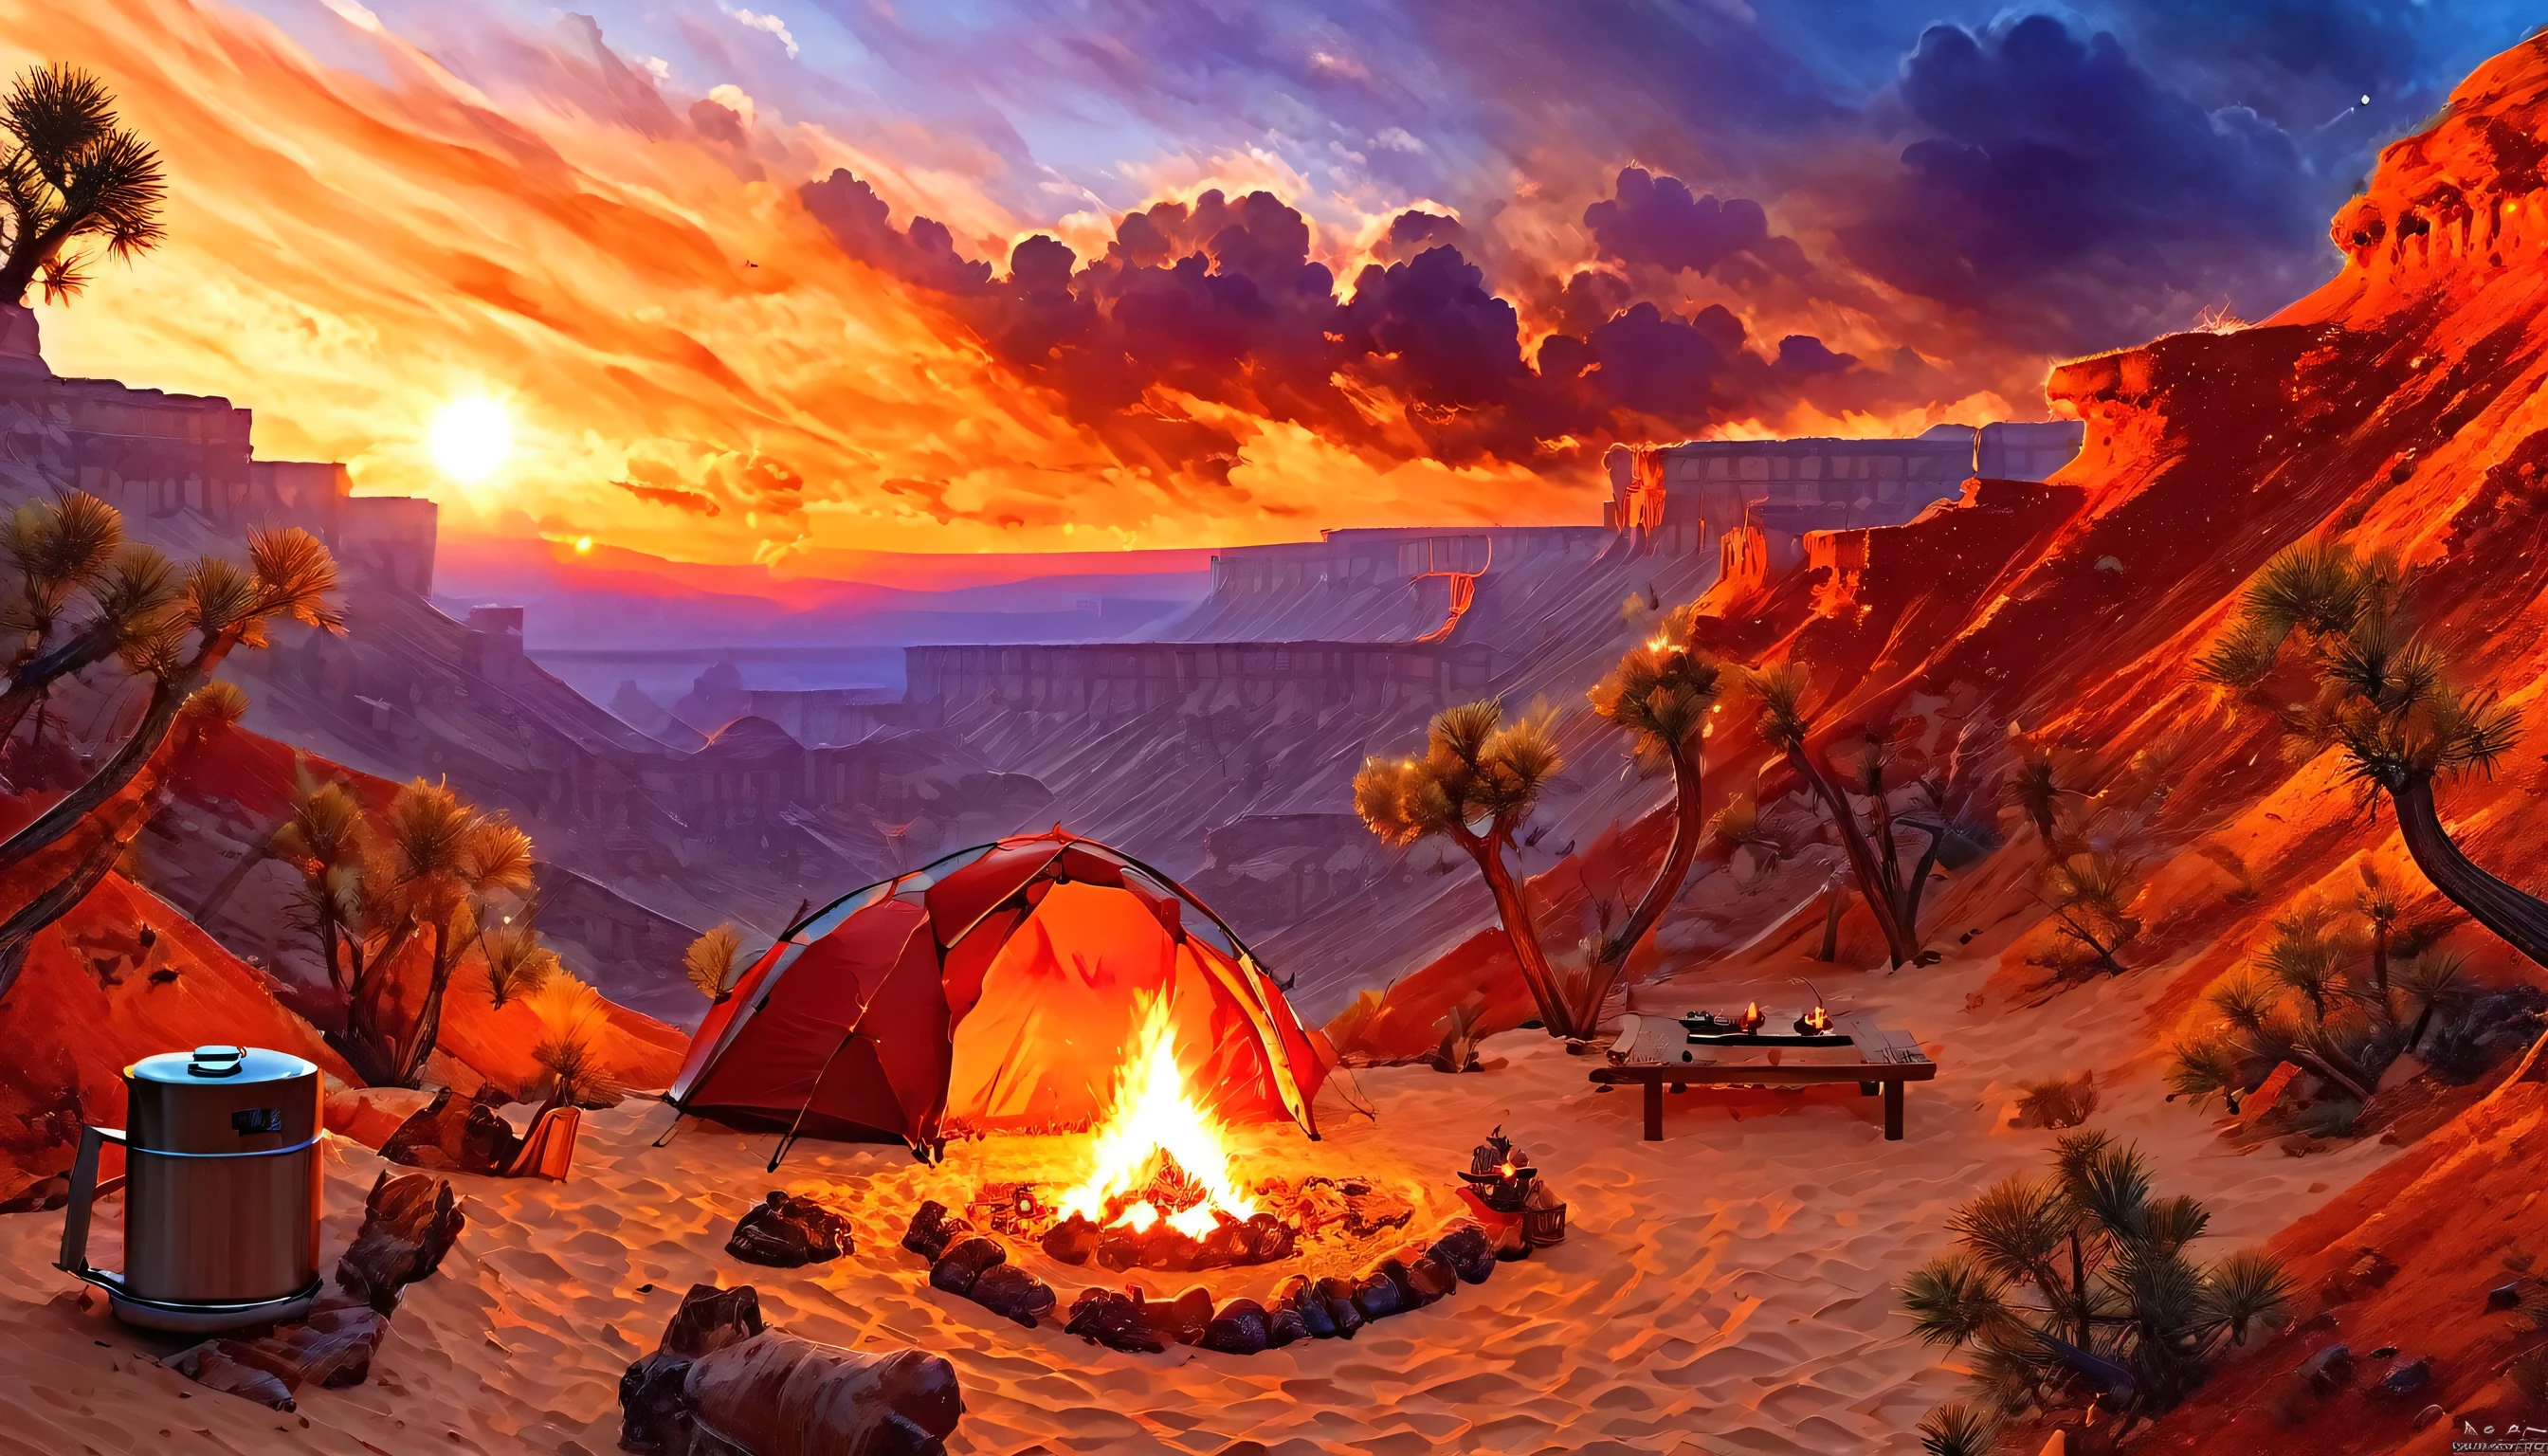 アラフェド, キャンプの写真 (テント: 1.2) そして小さい (キャンプファイヤー: 1.3), 砂漠の山頂で, 日没の空は様々な色合いに  (赤: 1.1), (オレンジ: 1.1), (アズール: 1.1) (紫:1.1) 火災現場から煙が上がっている, 砂漠の峡谷と渓谷の壮大な景色が見える, 地平線上にはまばらな木々がある, それは平穏な時間です, 平和, そしてリラクゼーション, 最高品質, 16k,  フォトリアリズム, ナショナルジオグラフィック賞受賞写真撮影, 超ワイドショット, レイジングネビュラ, レディシャドウ